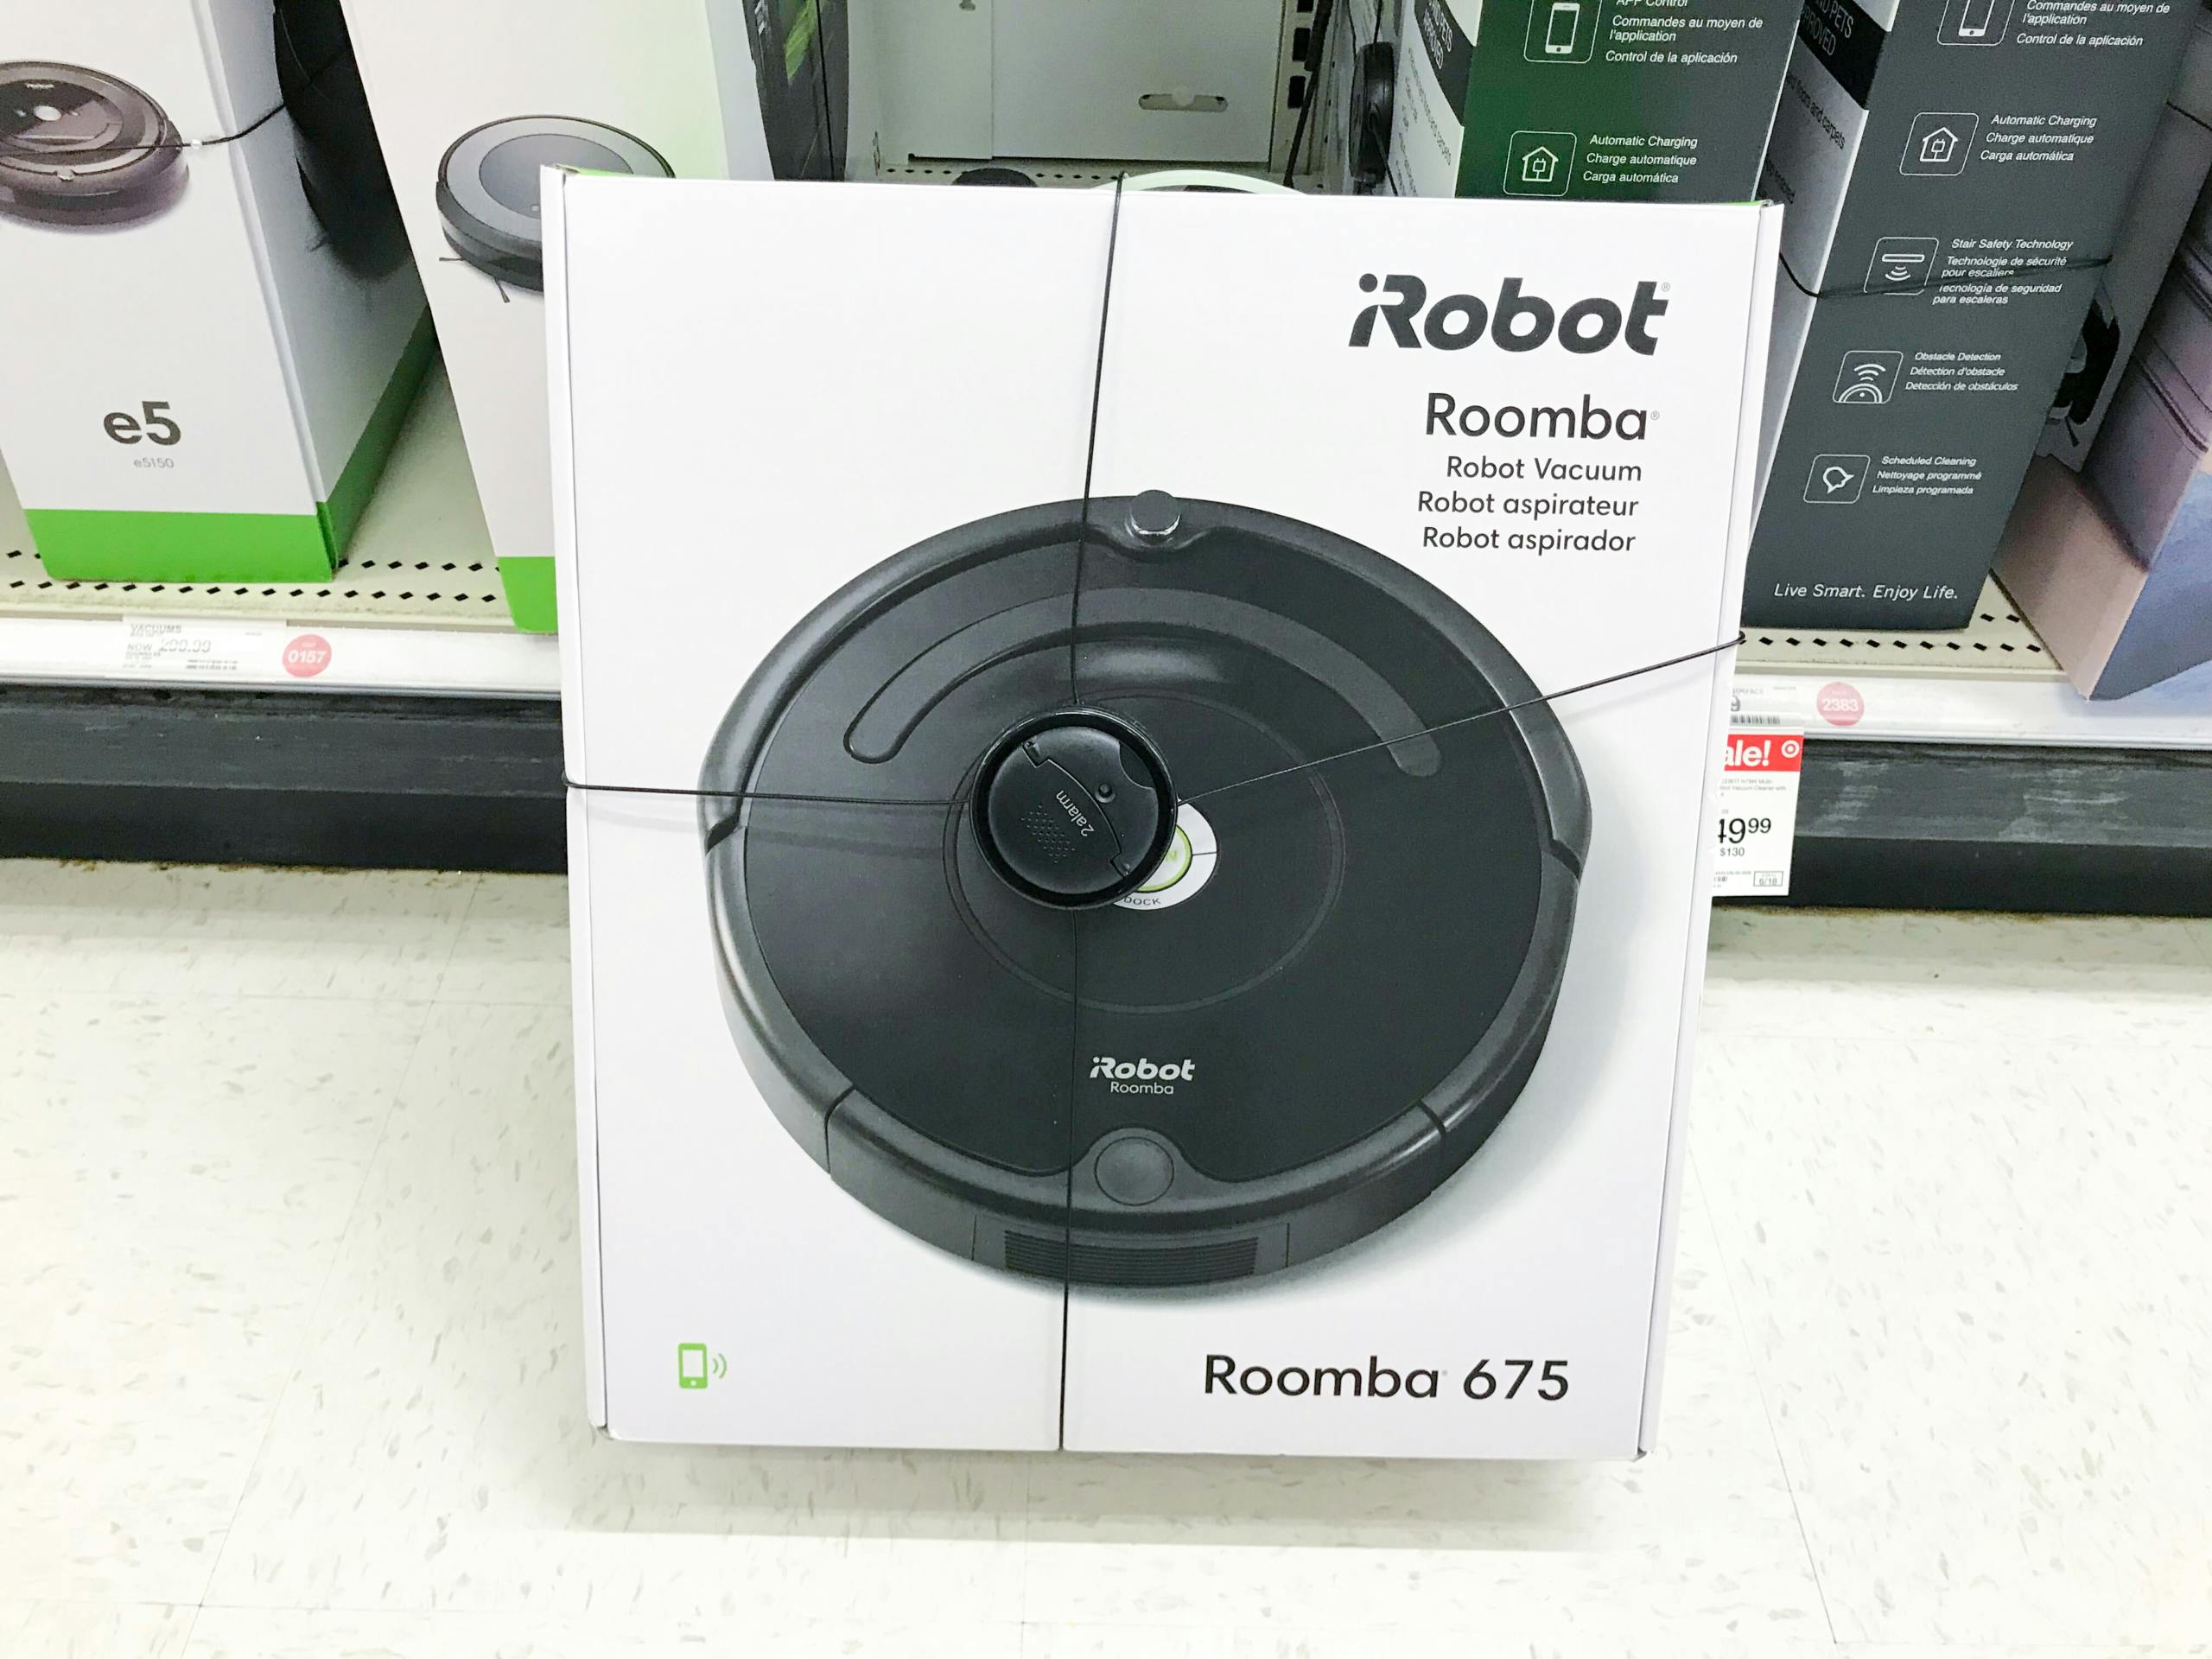 An Irobot Roomba vacuum at Target